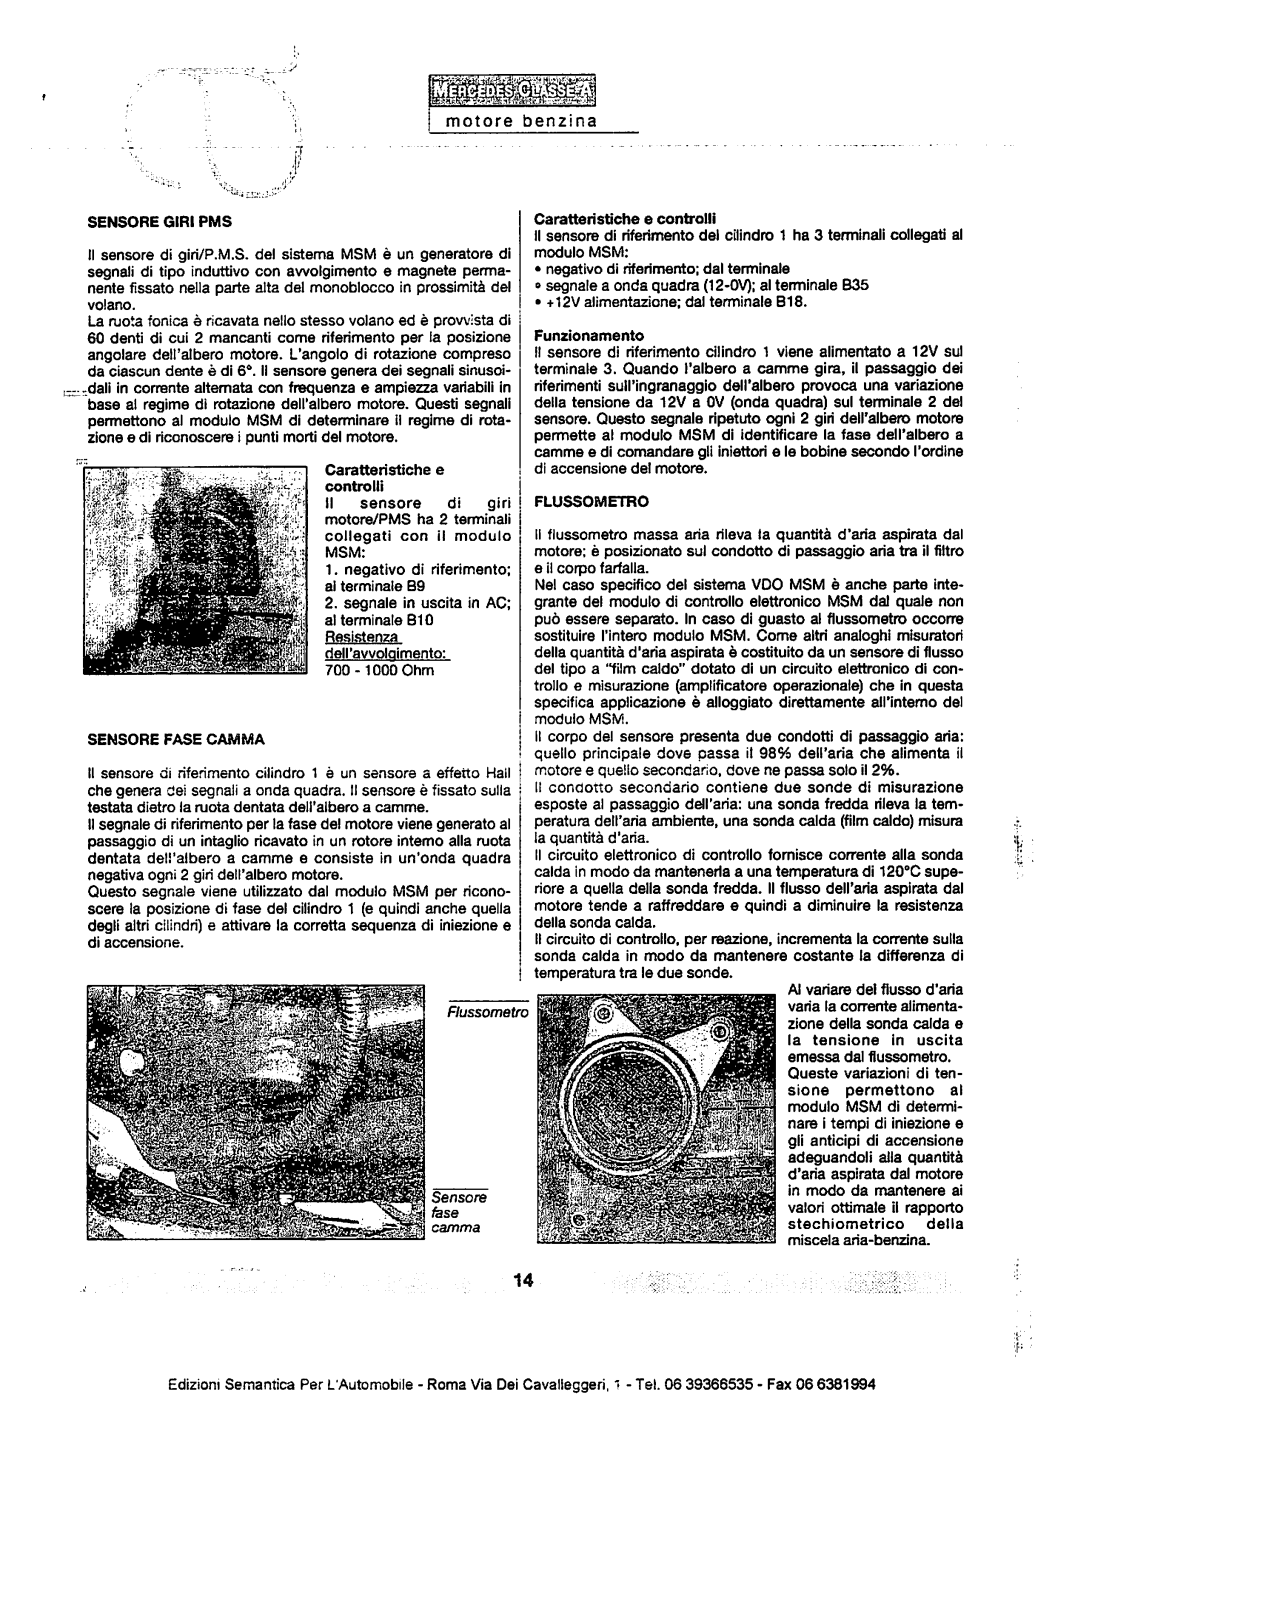 w168 - (W168): Manual técnico - tudo sobre - 1997 a 2004 - italiano 10oiu5w